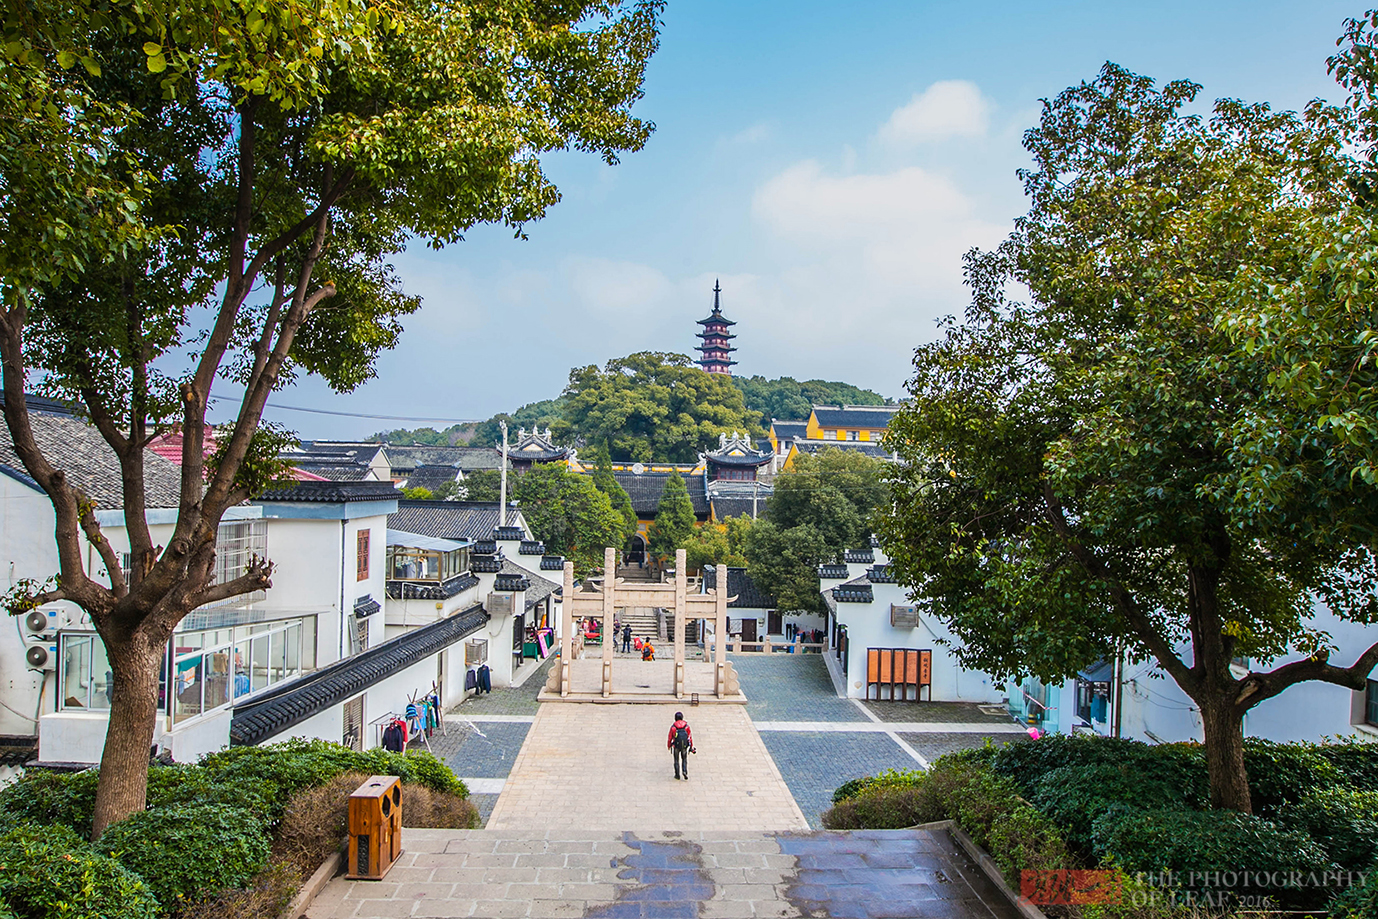 铜观音寺,原名光福讲寺,始建于梁朝大同年间,距今已有近1500